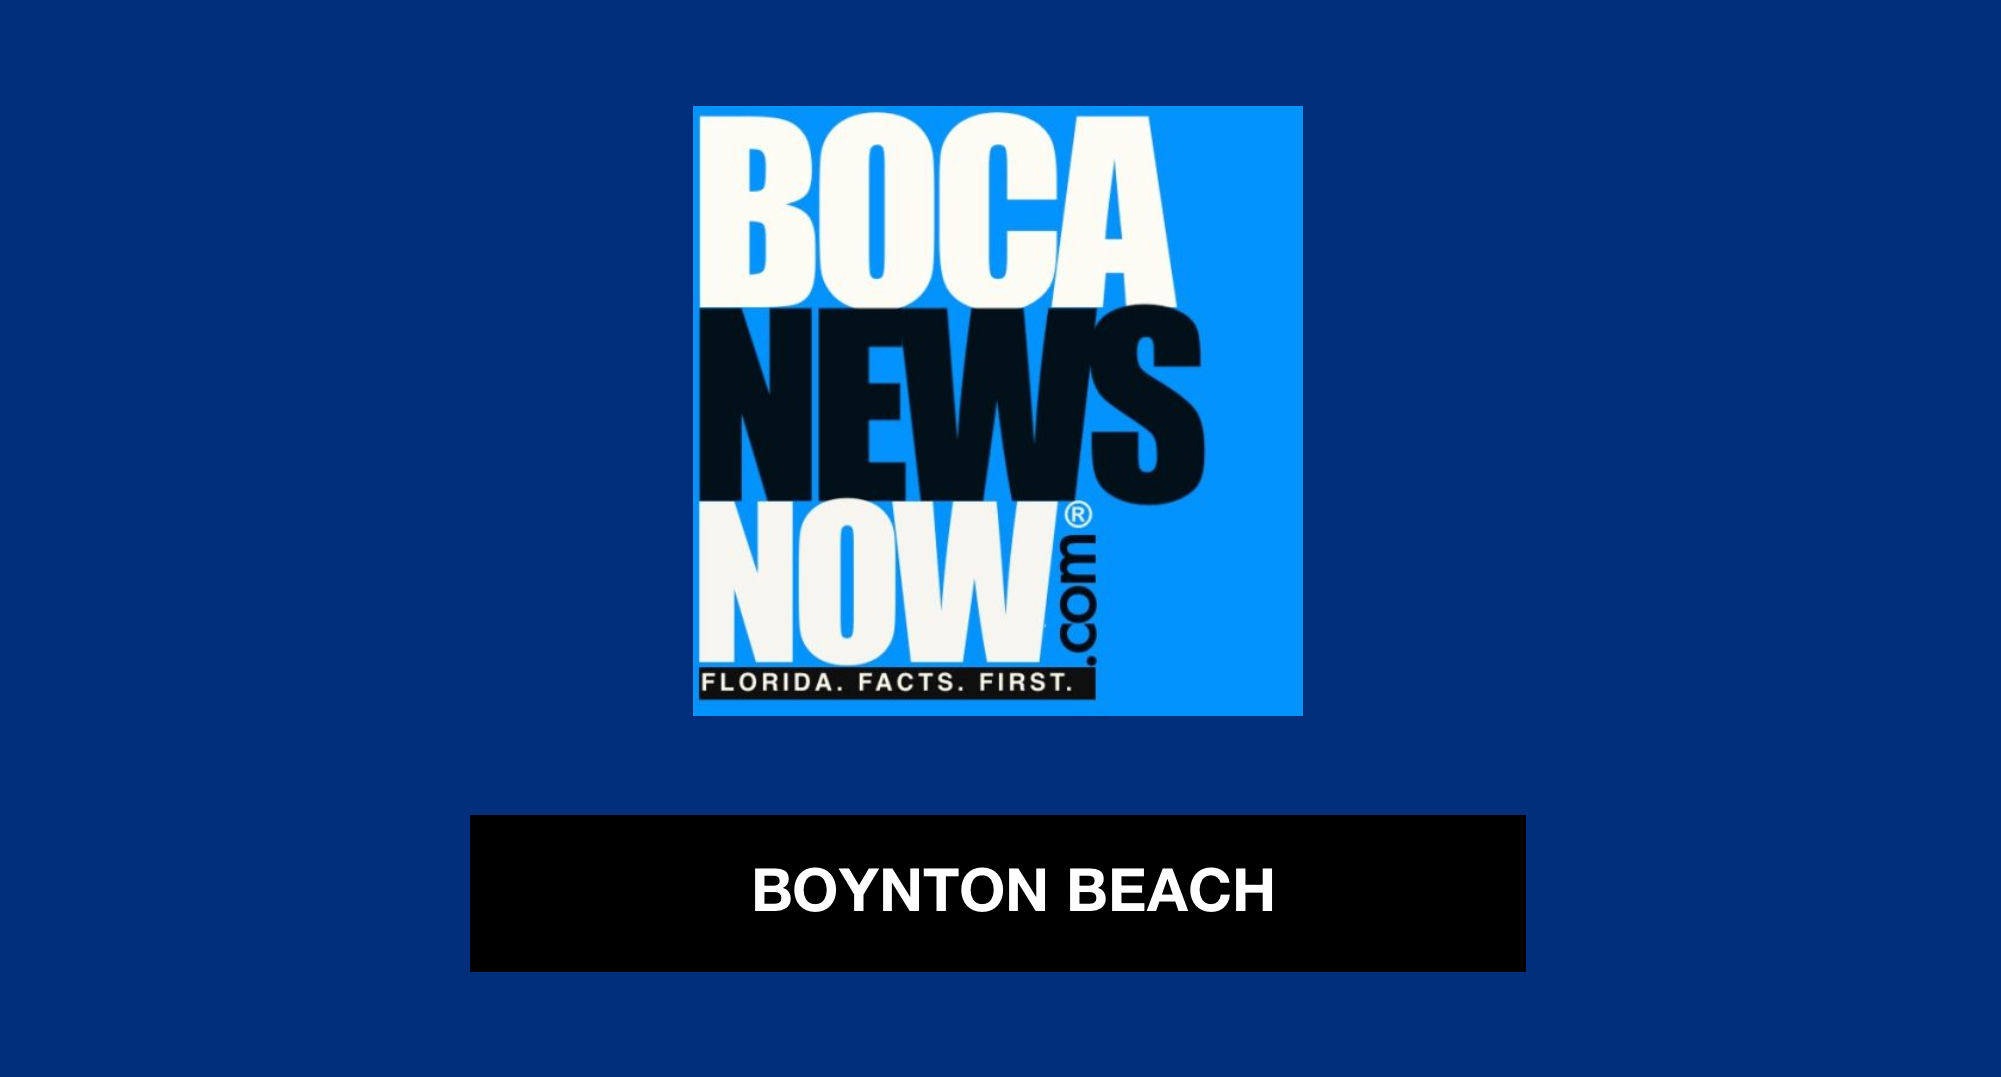 Boynton_Beach_BocaNewsNow